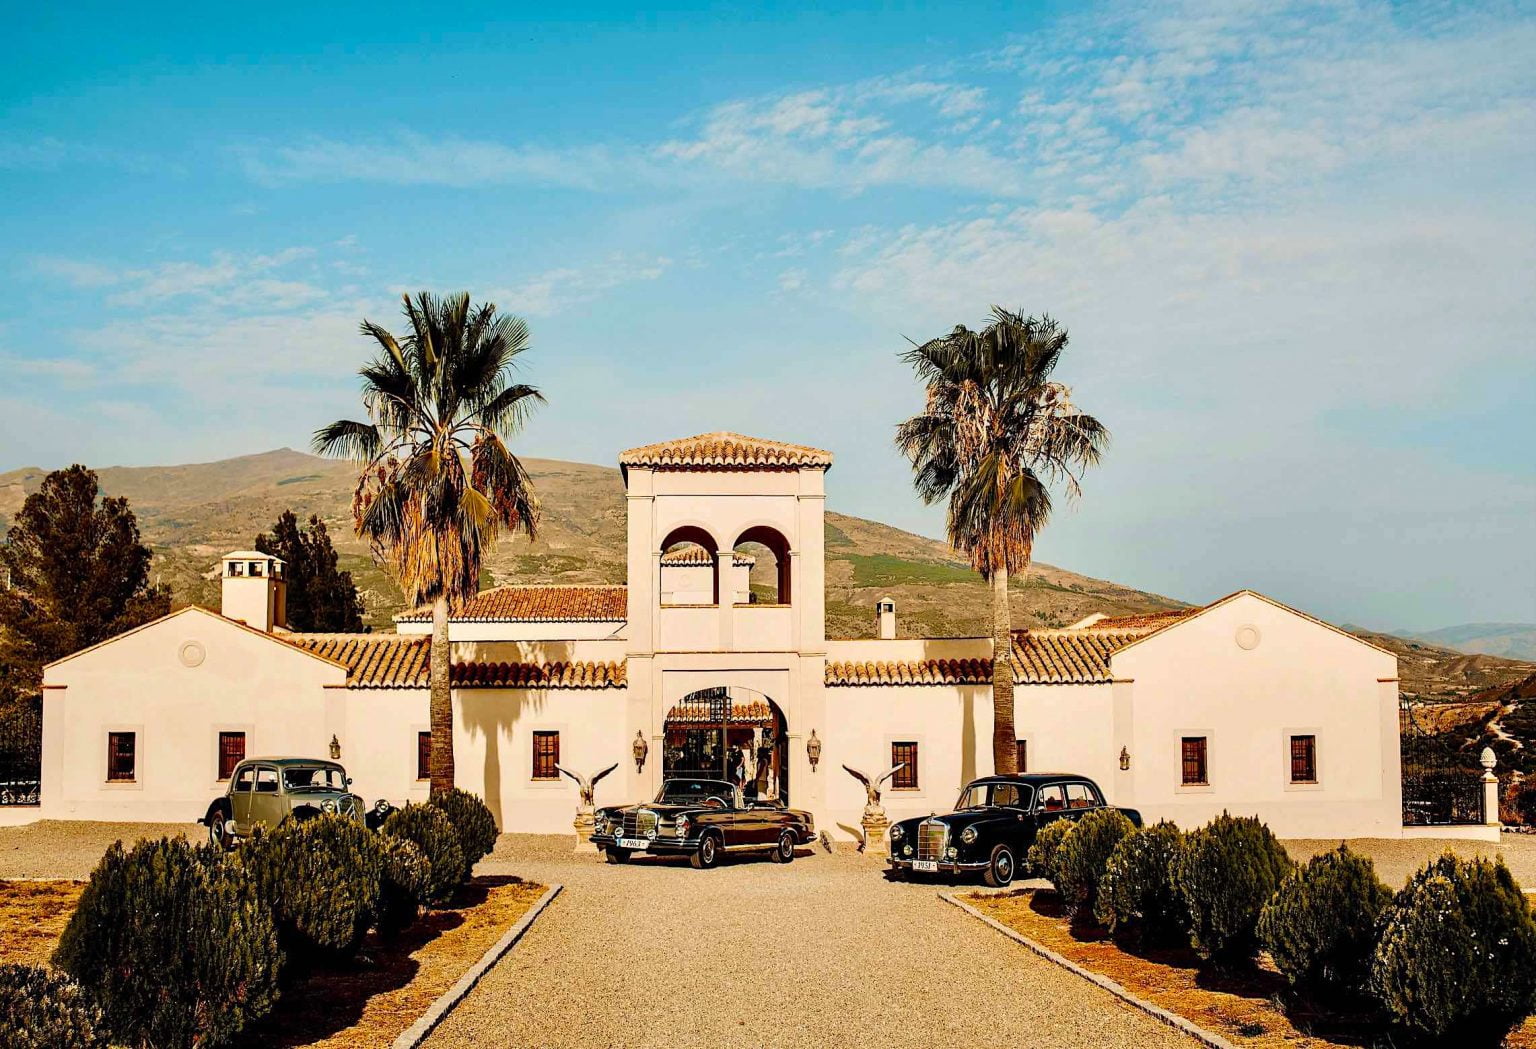 La Esperanza Granada, the most romantic hacienda in Andalucia